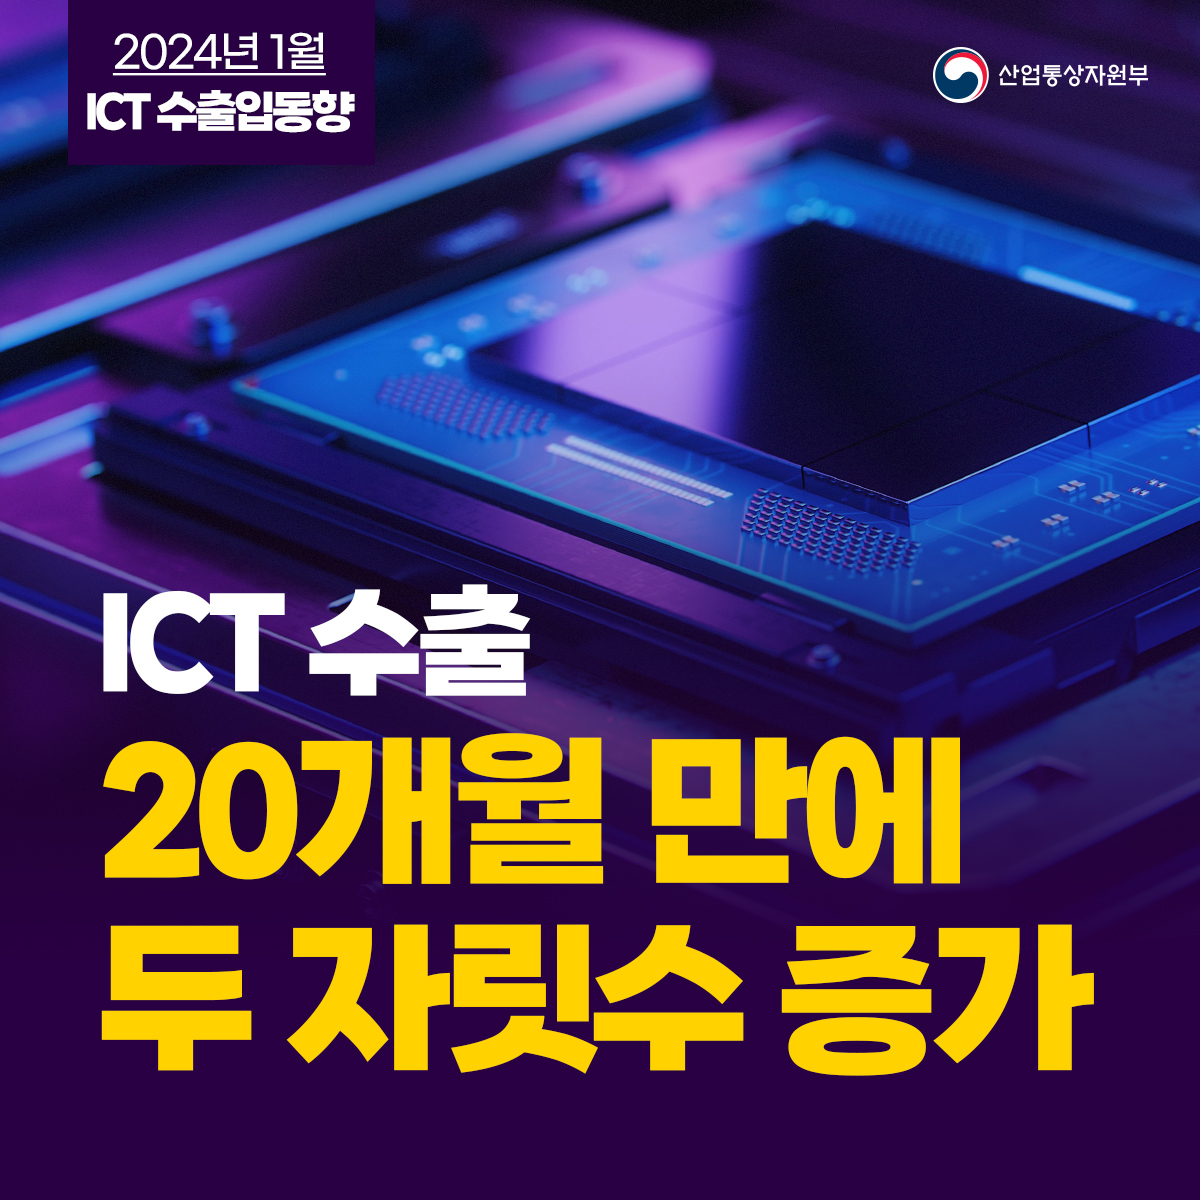 ICT 수출, 20개월 만에 두 자릿수 증가